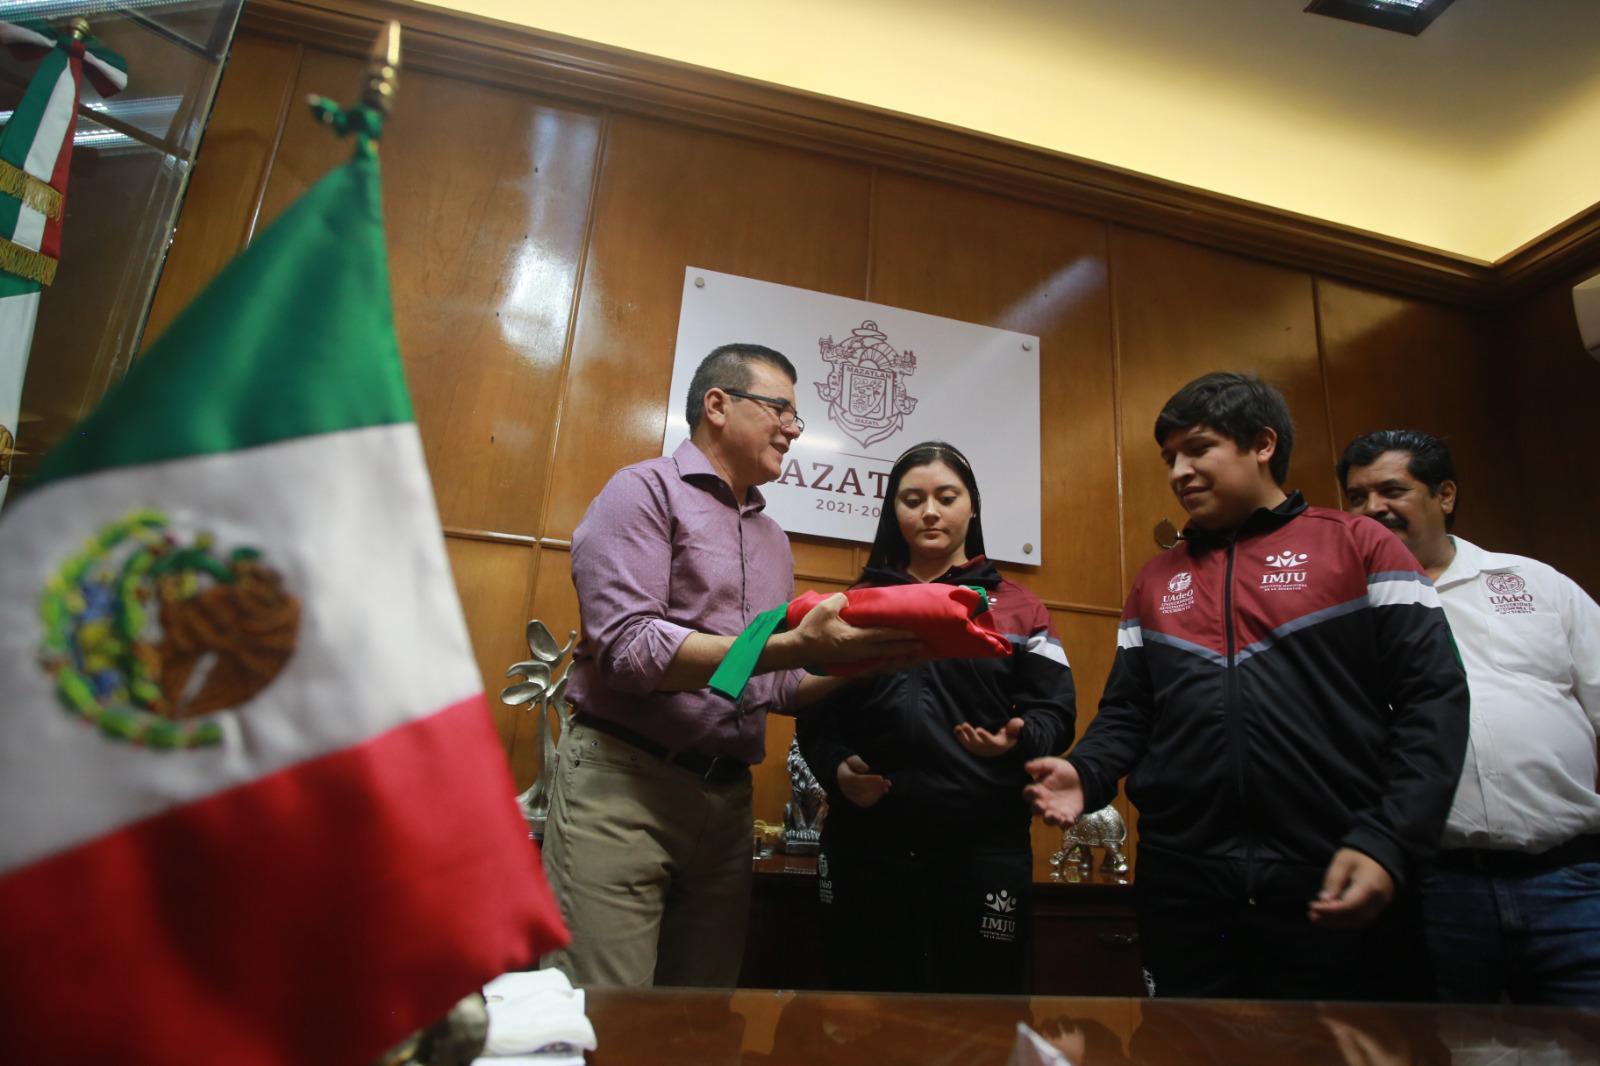 $!Abandera Alcalde a equipo mazatleco que participará en Infomatrix 2023, en Chile